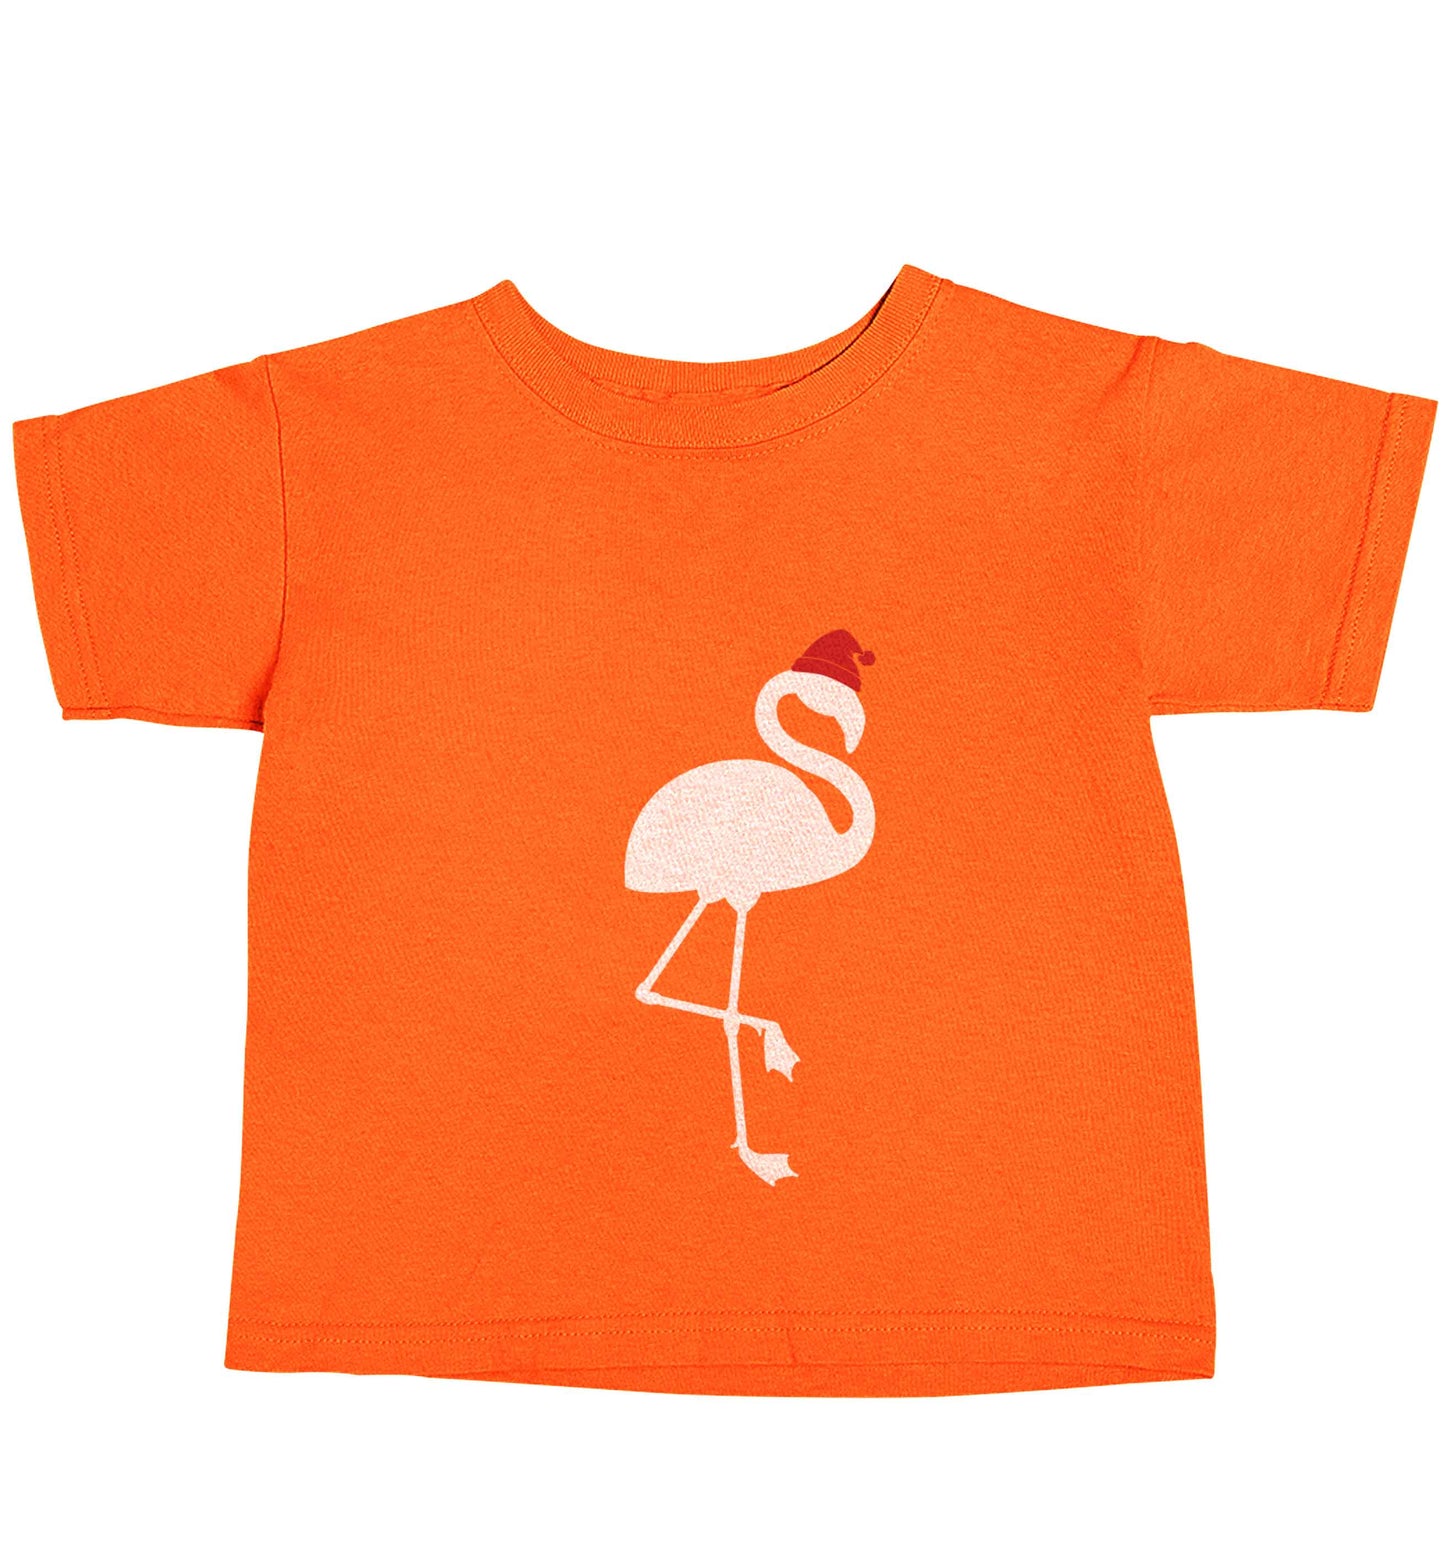 Pink flamingo santa orange baby toddler Tshirt 2 Years